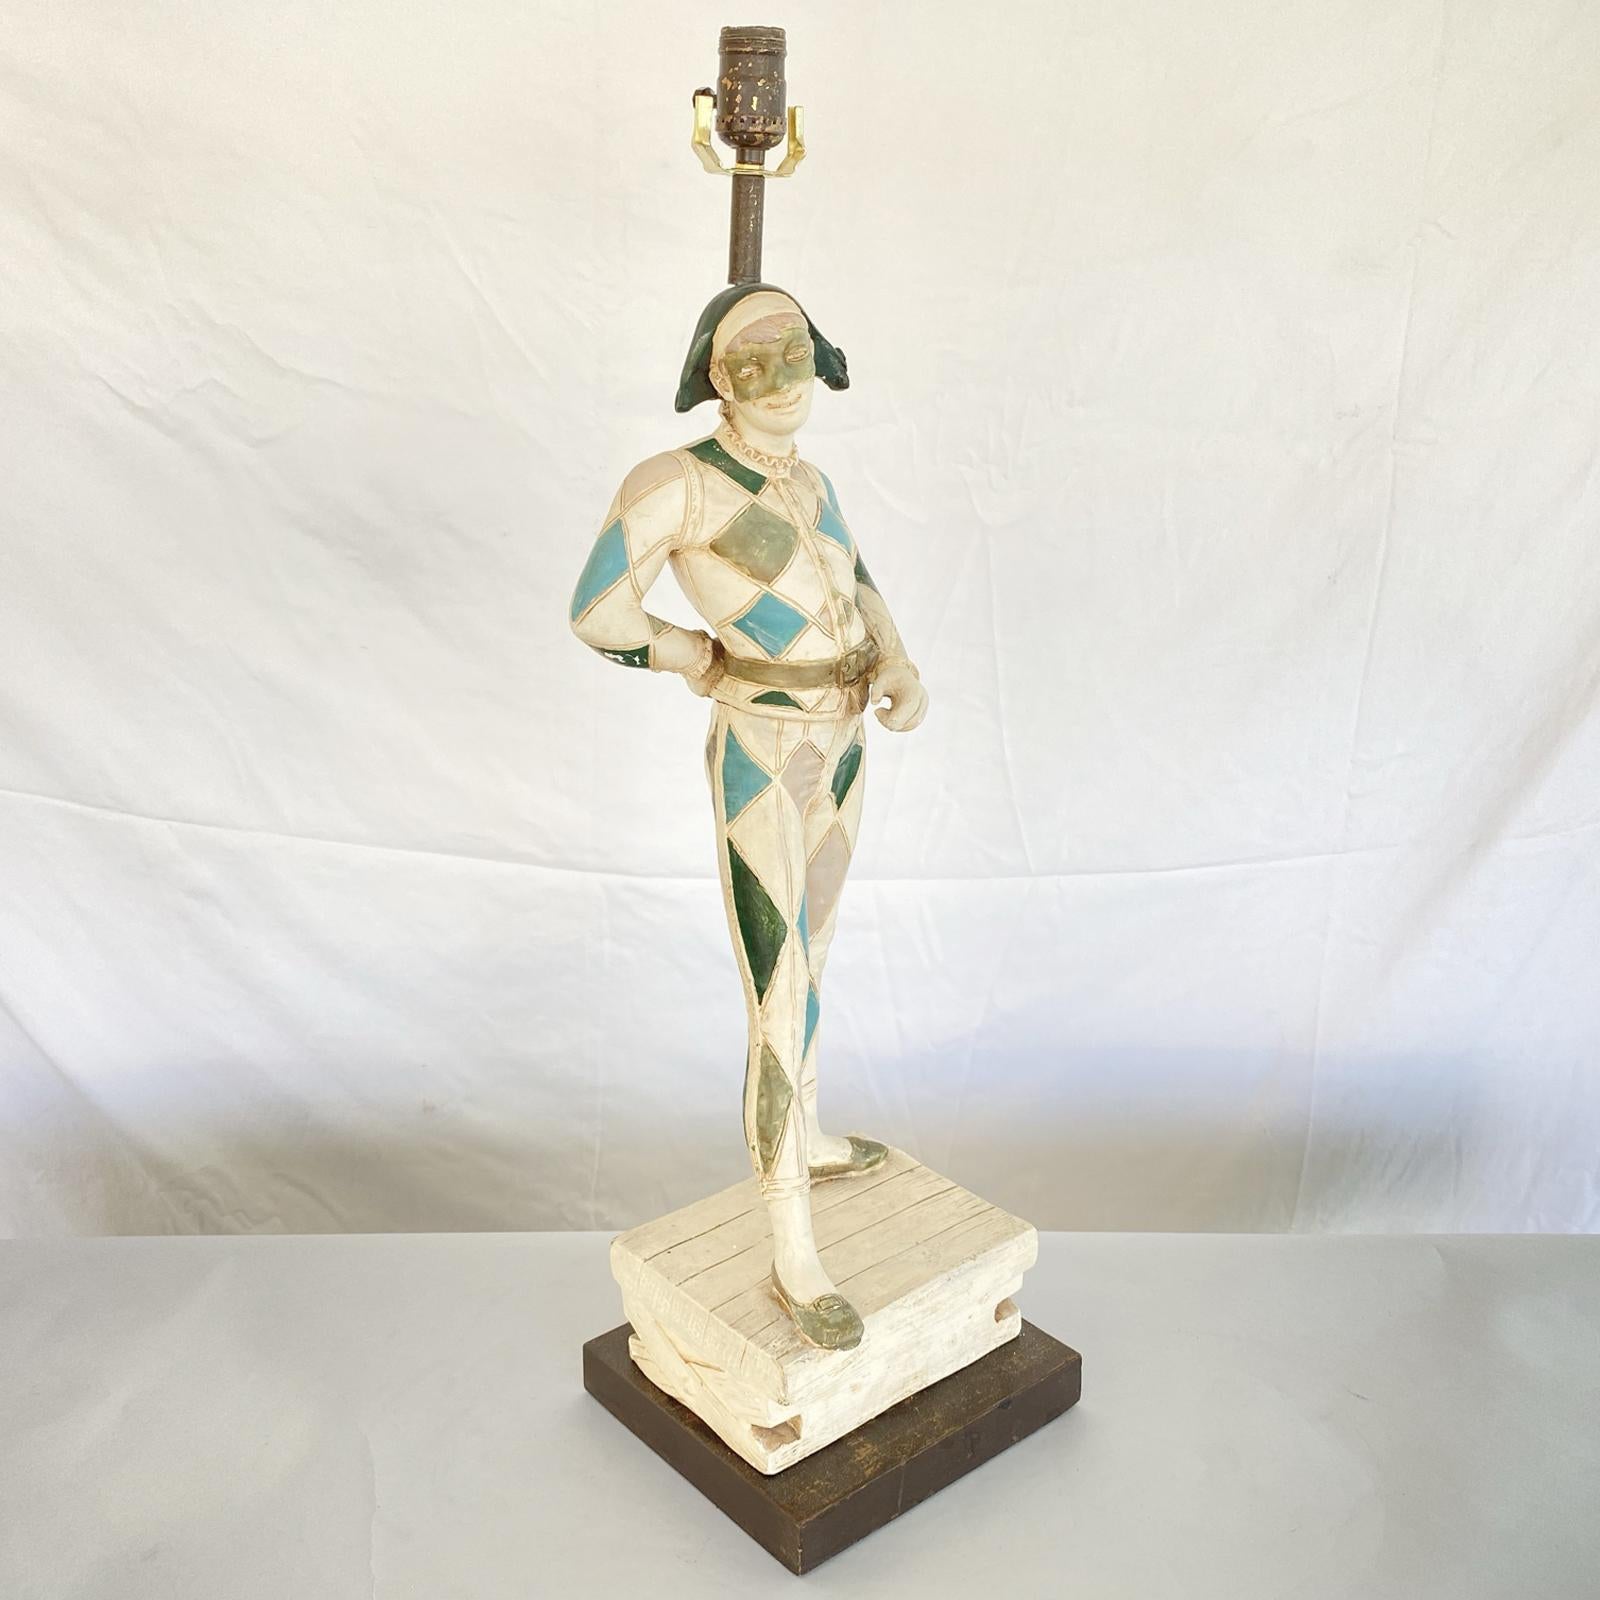 Lampe figurative unique de la Marboro Lamp Company, en plâtre peint à la main, formant un bouffon masqué, debout sur une caisse, montée sur une base en bois peint. 

Stock ID : D2993.